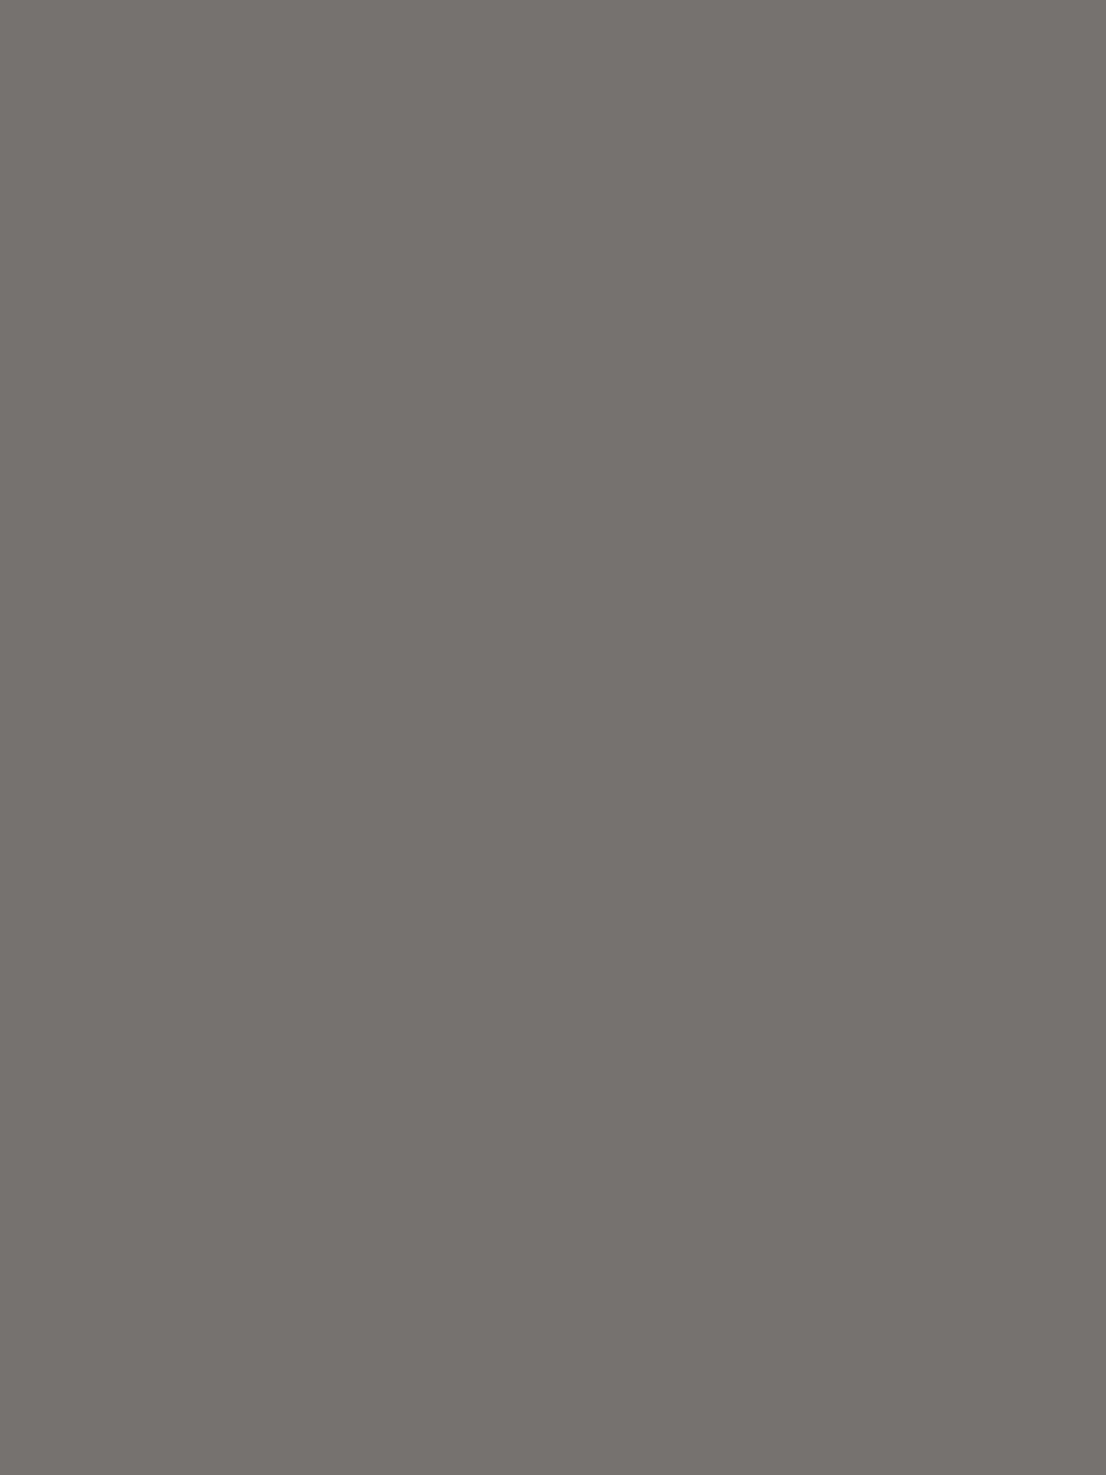 Орест Верейский. Иллюстрация к роману Льва Толстого «Анна Каренина». Москва: Издательство «Правда», 1984